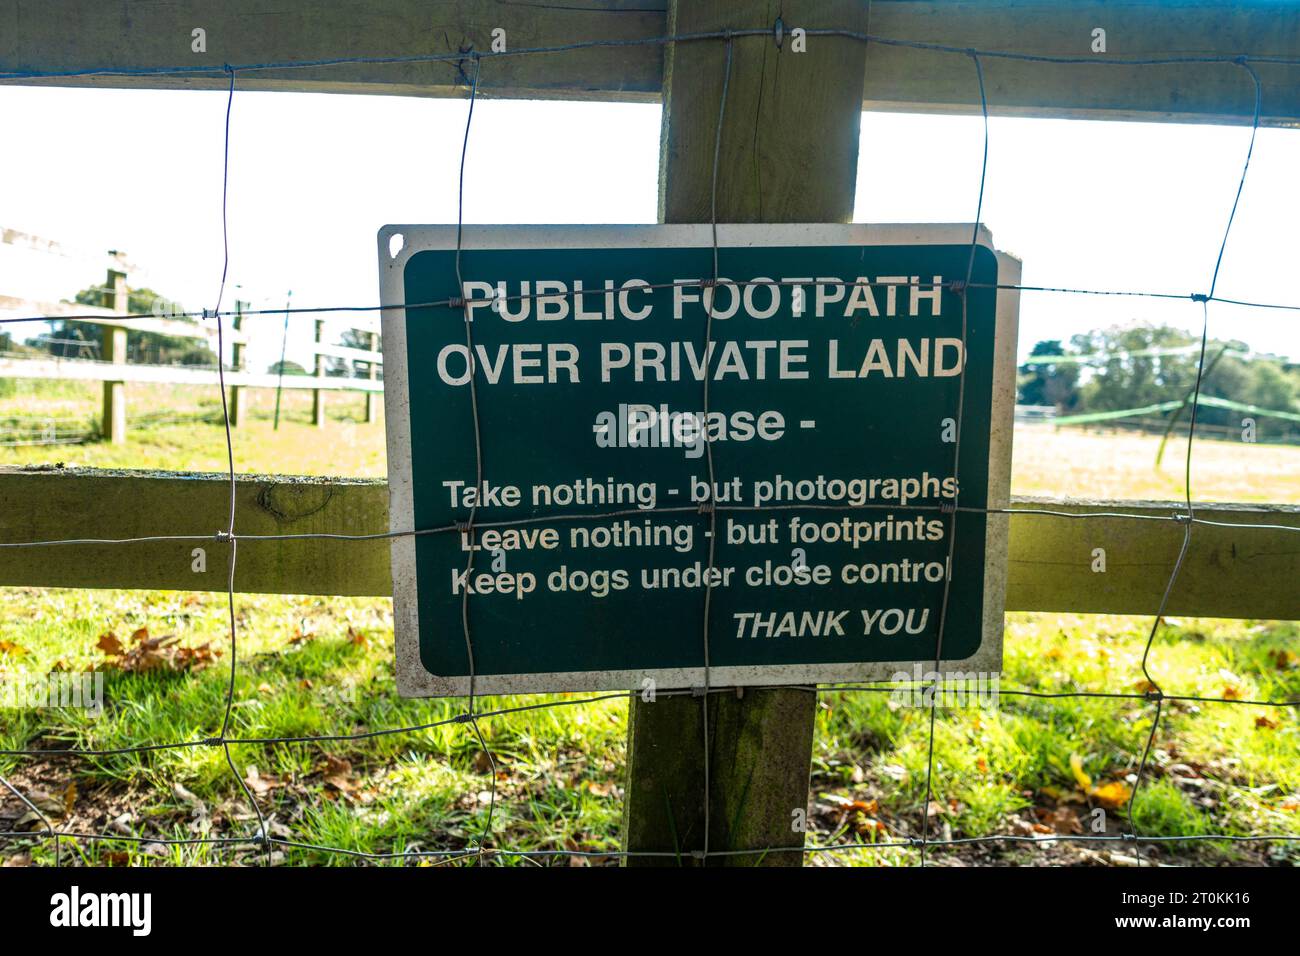 Un cartello verde attaccato a una recinzione di legno che indica le regole per camminare lungo un sentiero pubblico su un terreno privato Foto Stock